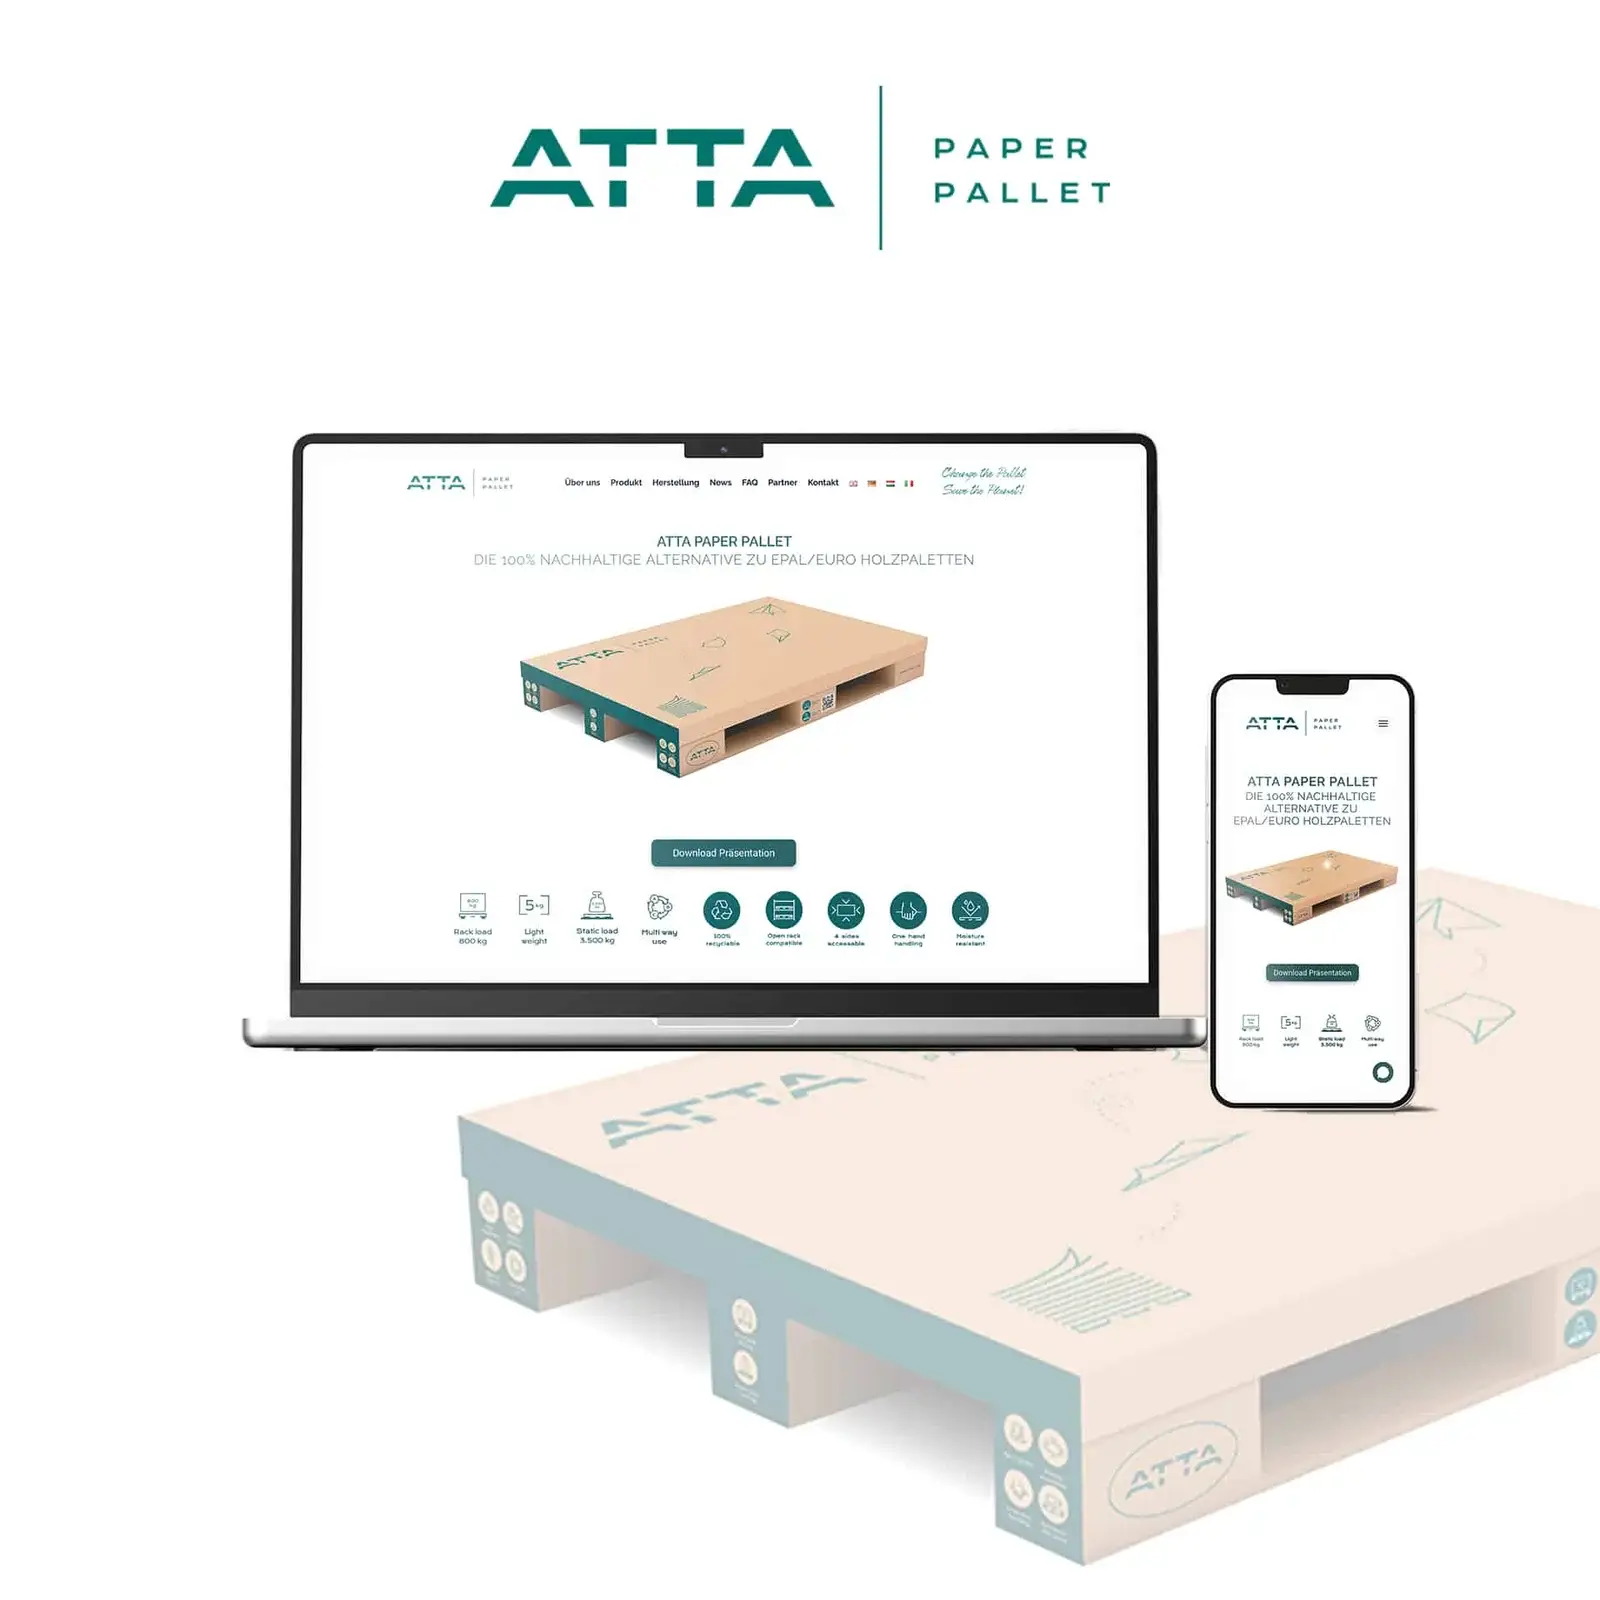 Atta Pallet durch gezieltes digitales Marketing und eine optimierte Webseite seine Präsenz